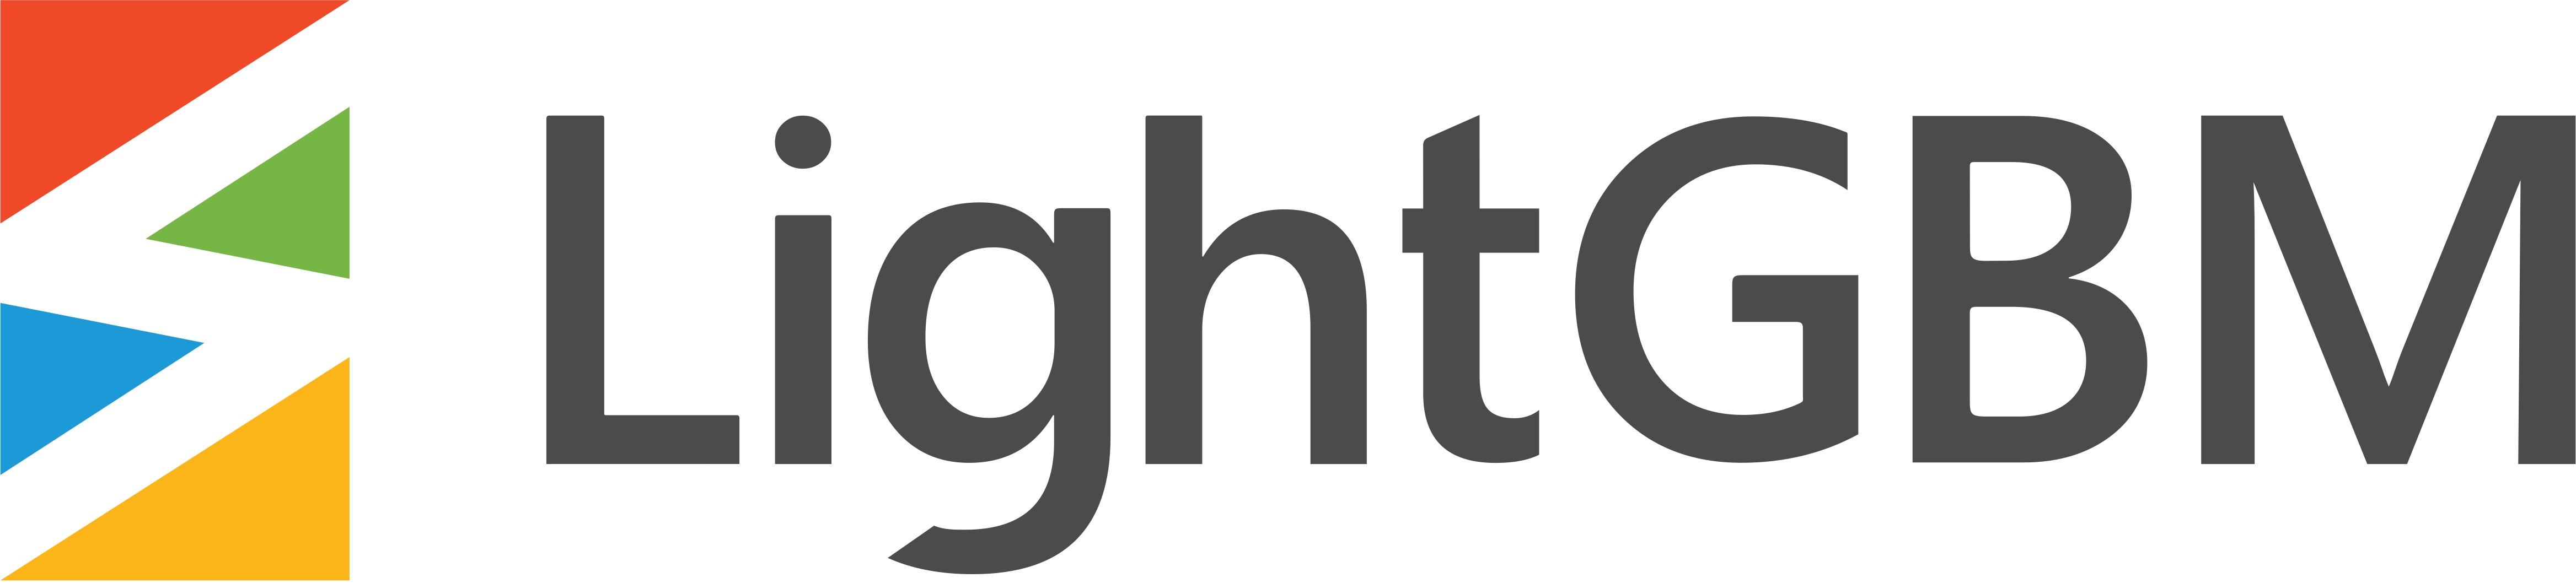 ../_images/lightgbm_logo.png